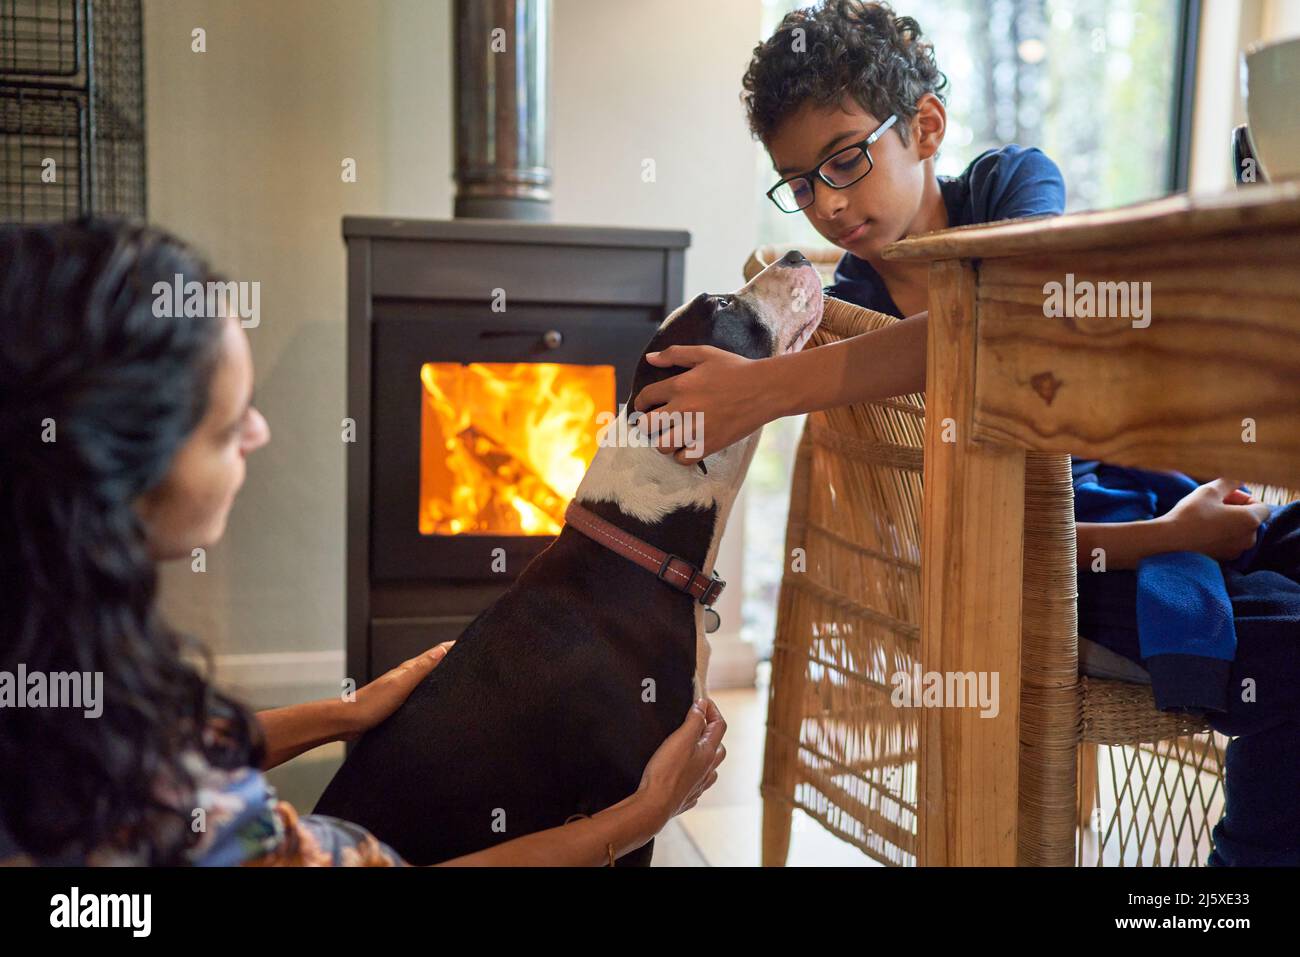 Boy petting dog by fireplace Stock Photo